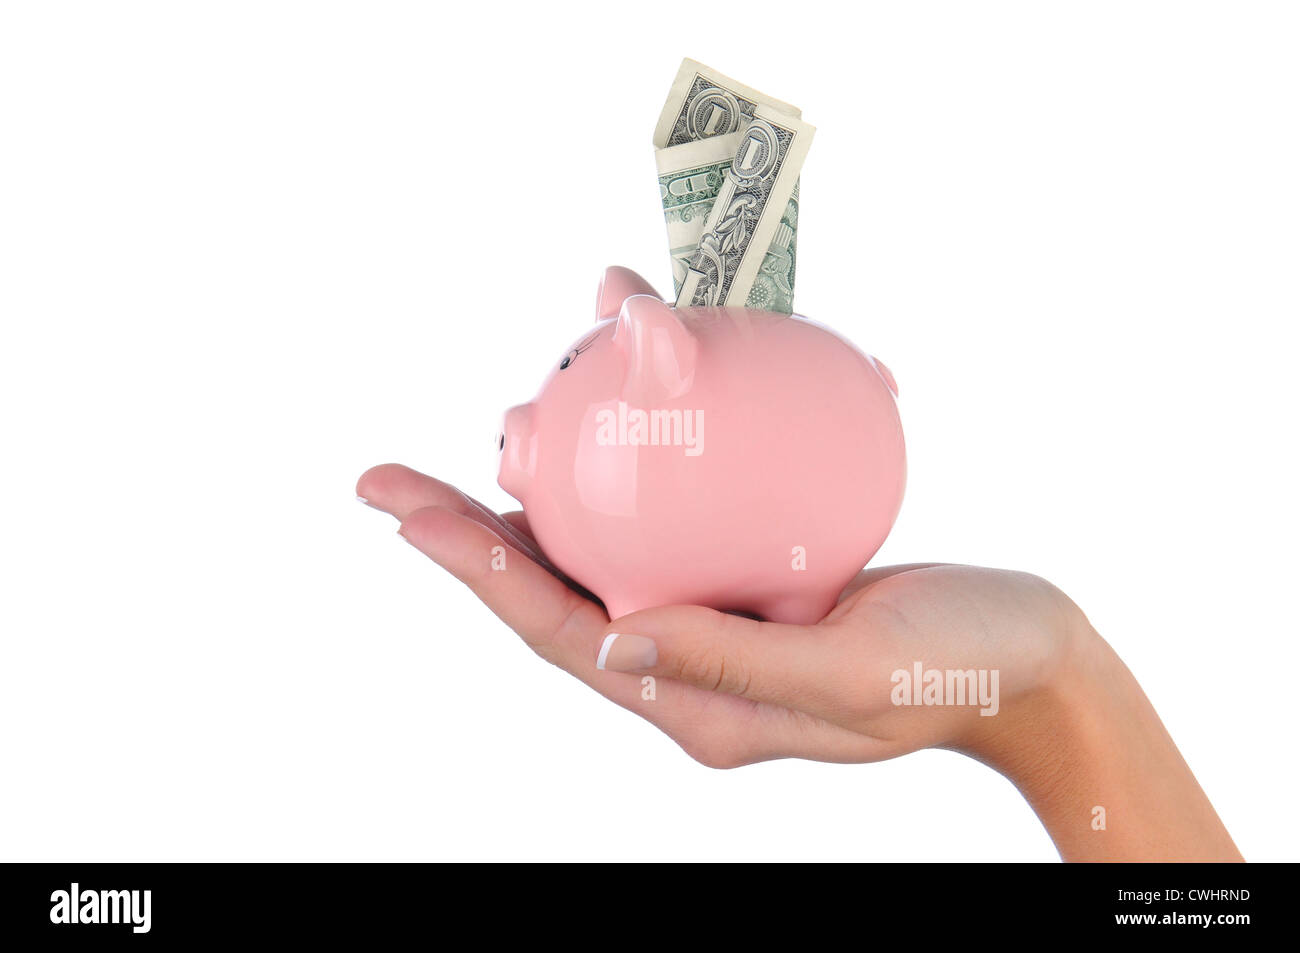 Closeup of a woman's hand holding a pink piggy bank avec un billet d'un dollar coincé dans la fente supérieure. Banque D'Images